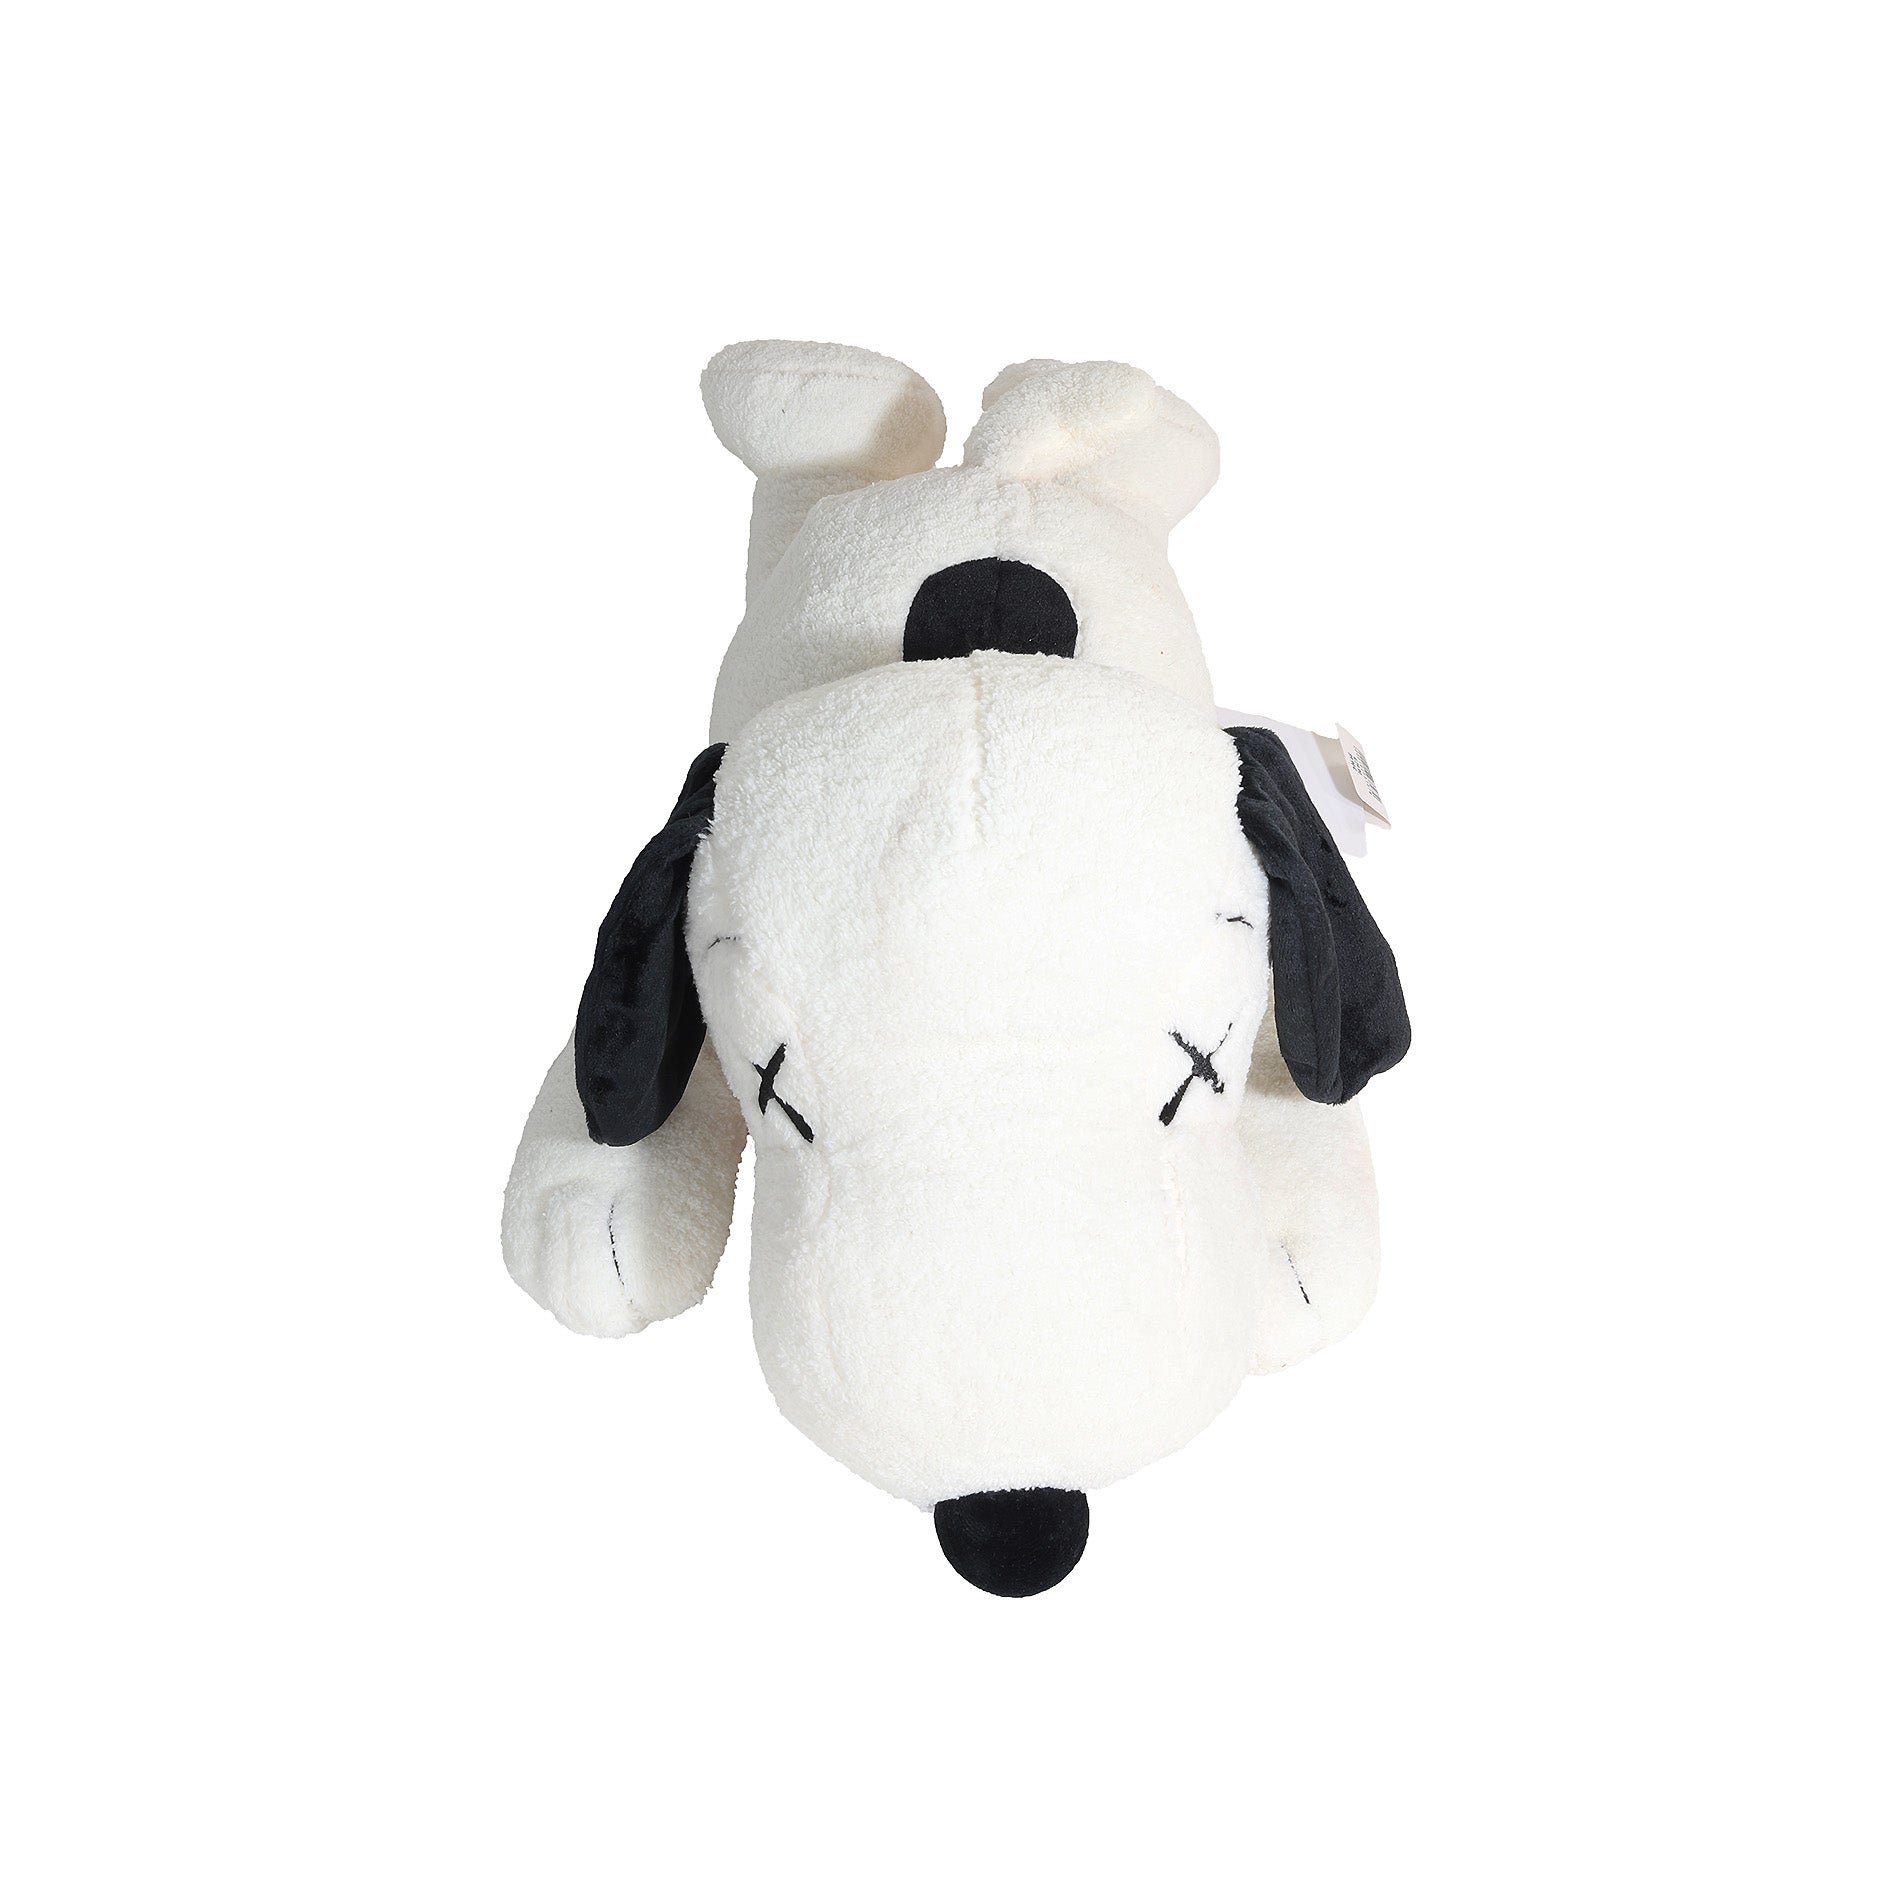 Uniqlo KAWS FW17 Large White Snoopy Plush